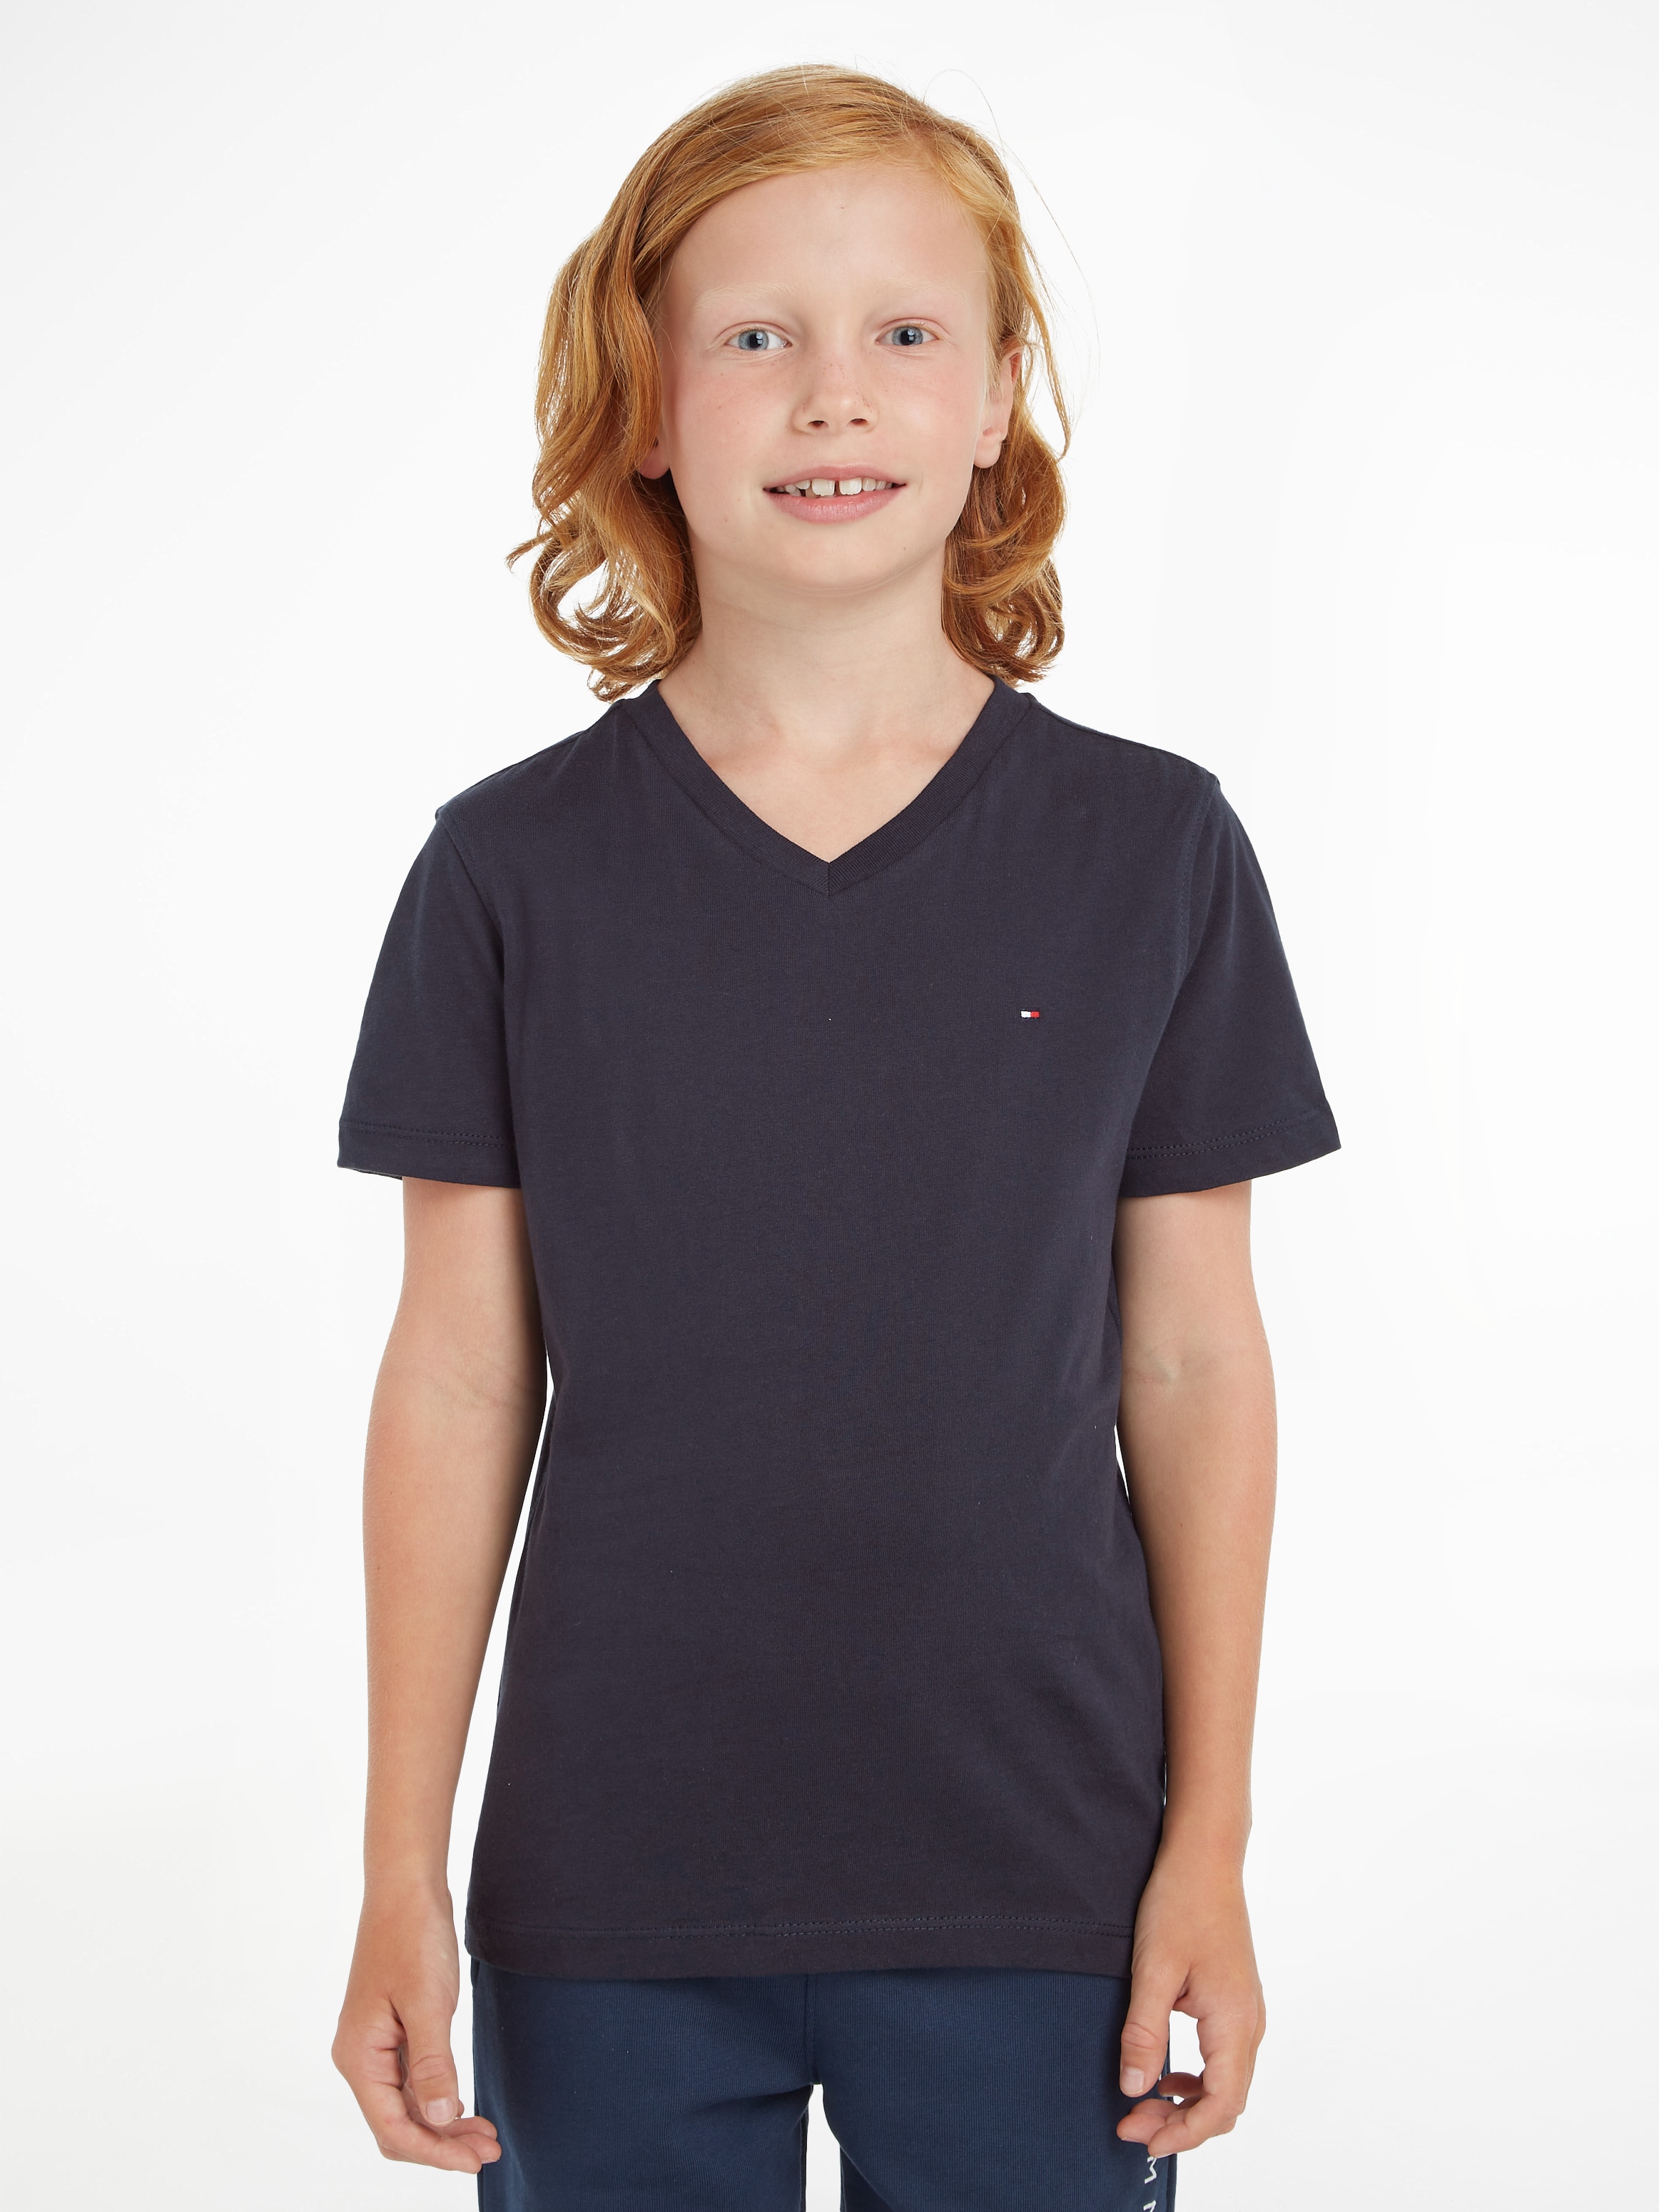 »BOYS BASIC Flag Tommy Hilfiger mit KNIT Logo- V-Shirt kaufen bei VN Tommy S/S«, Hilfiger OTTO